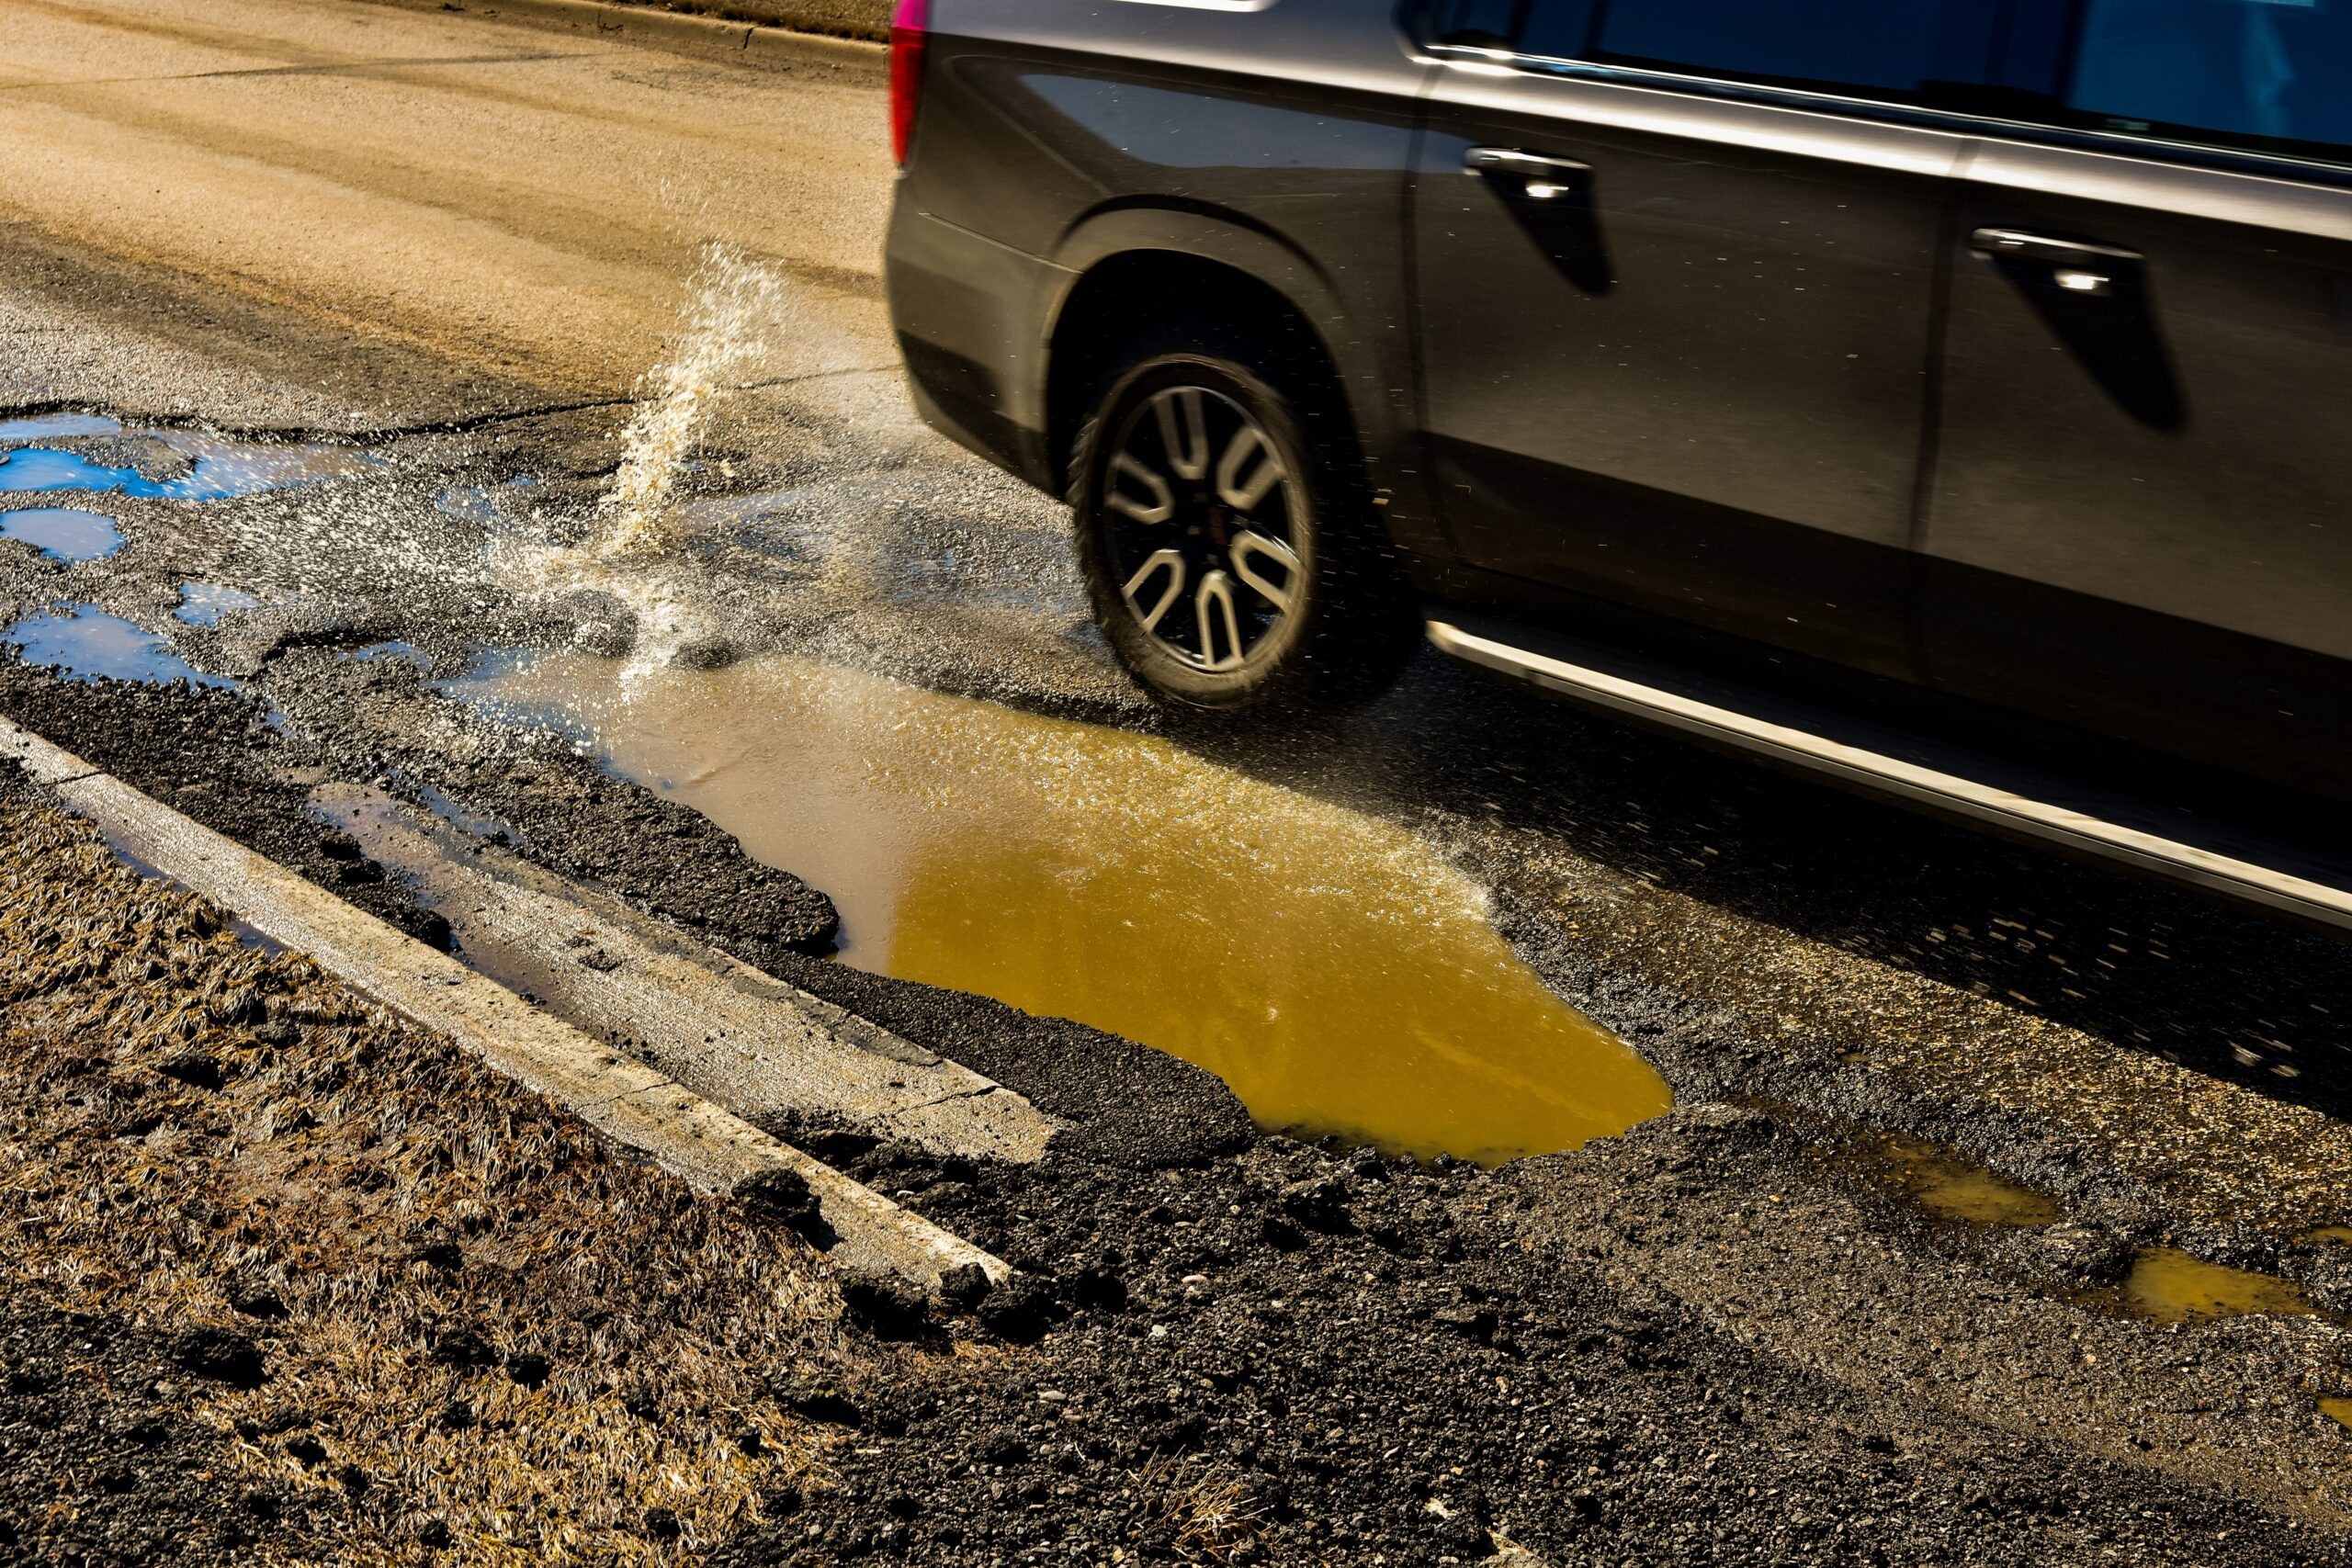 How To Get Reimbursed For Pothole Damage